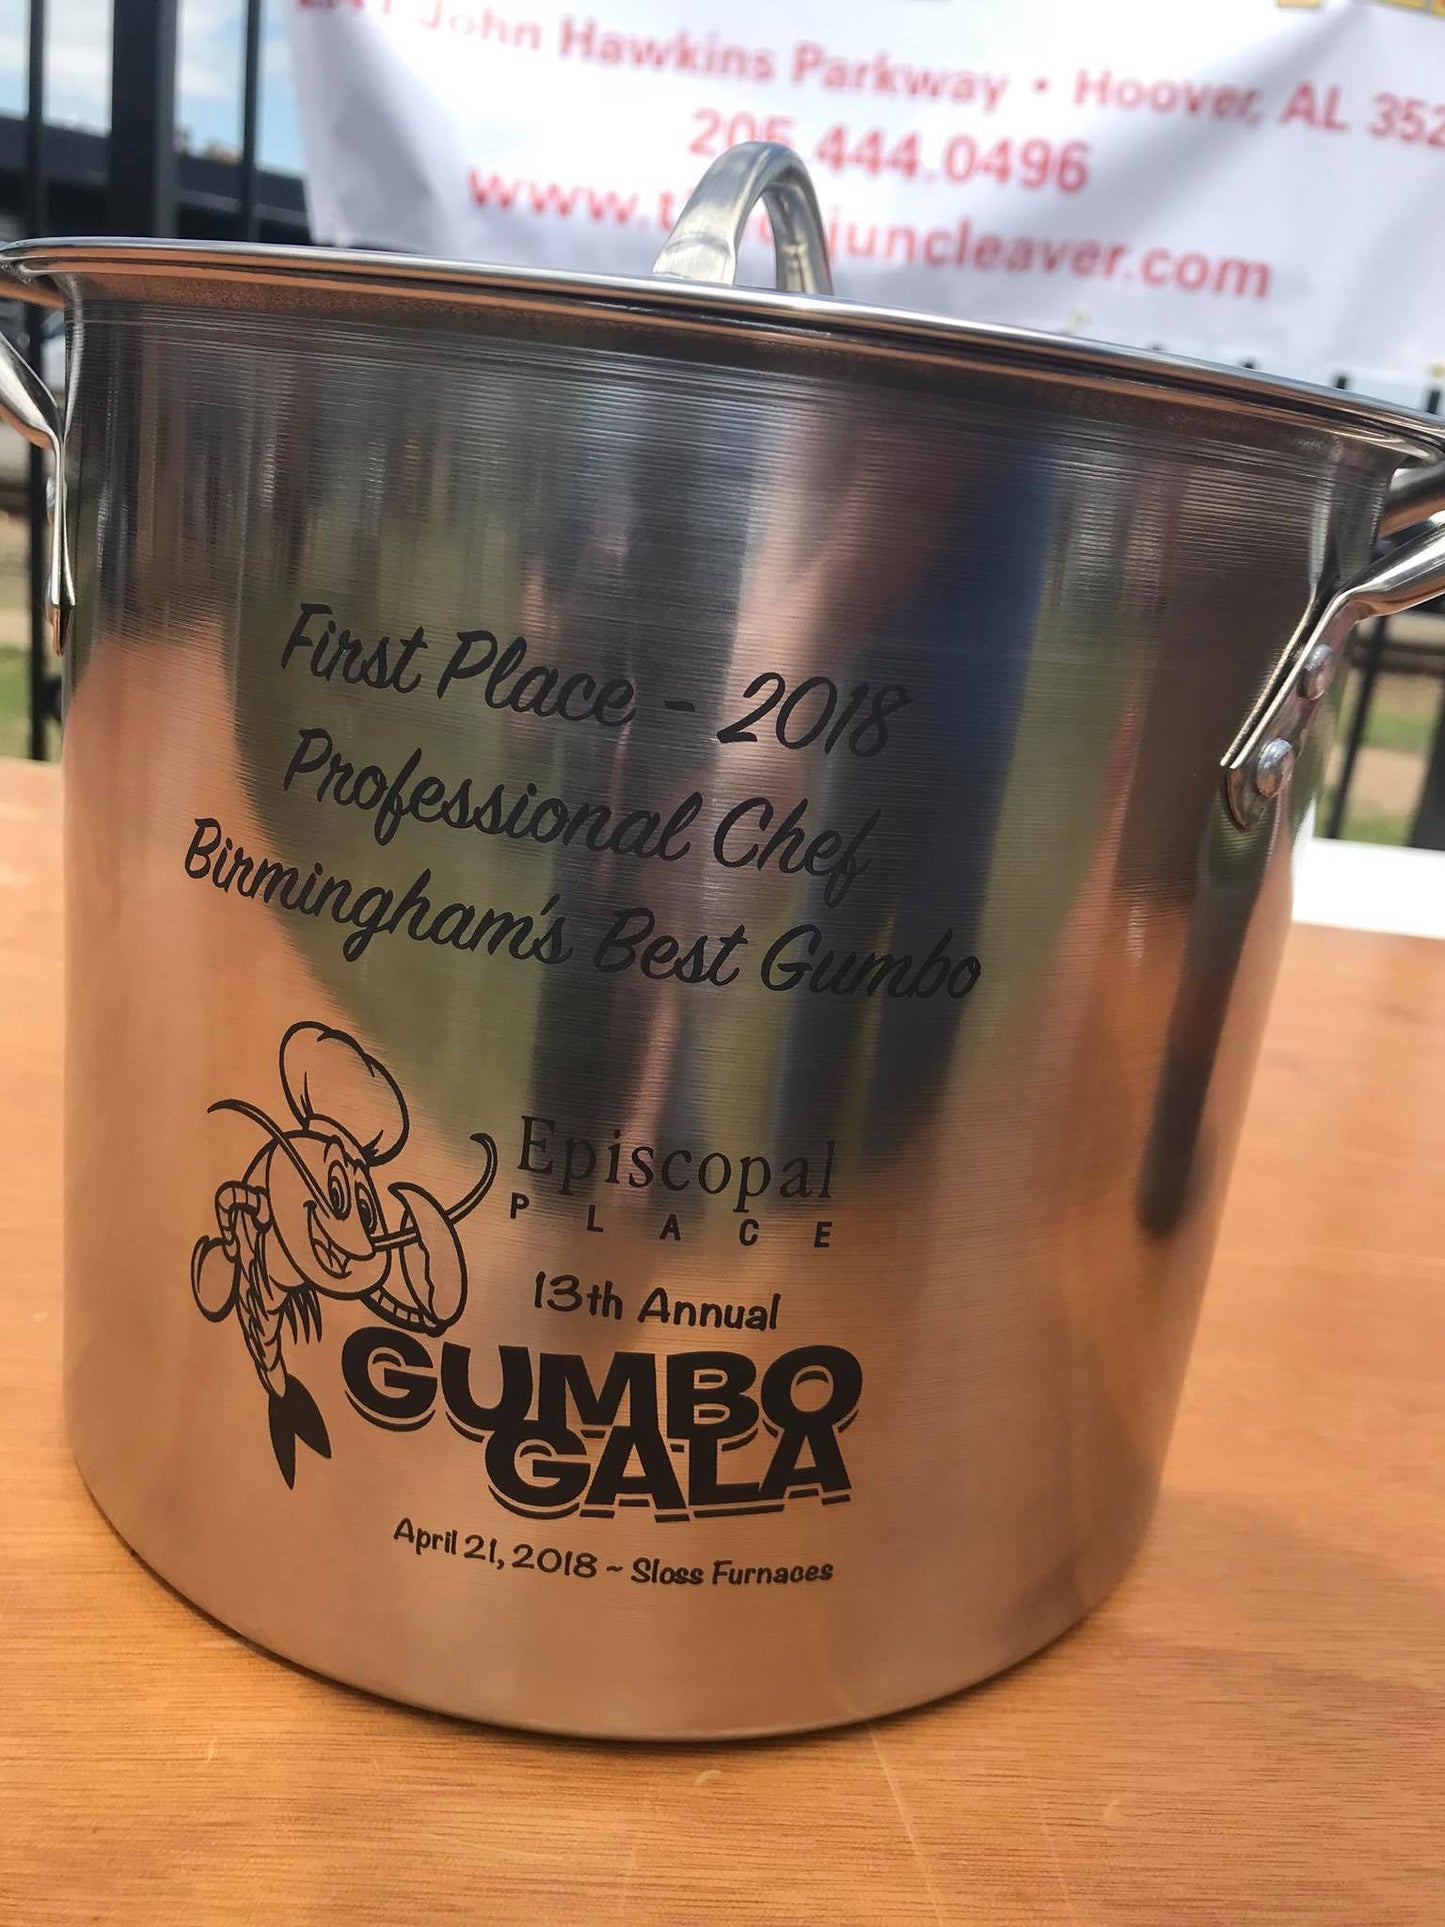 Shrimp & Crab Gumbo (Birmingham's Best 2018 & 2019 at Gumbo Gala)